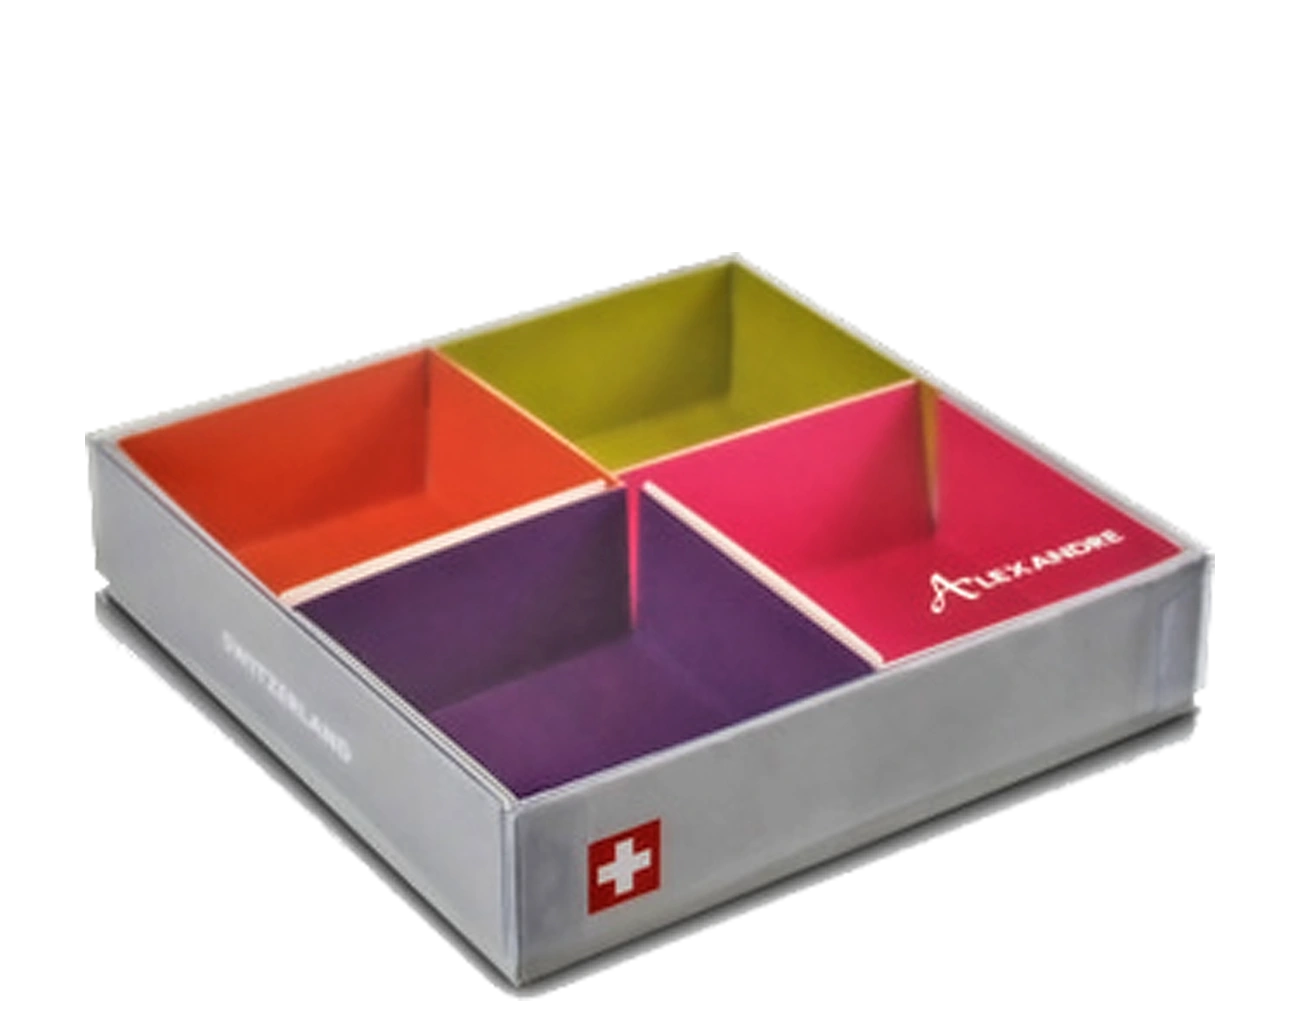 Conception Custom de ces compartiments intérieurs en carton rigide colorés et contrecollé à cette boîte cloche personnalisée + Couvercle avec Transparence PET.